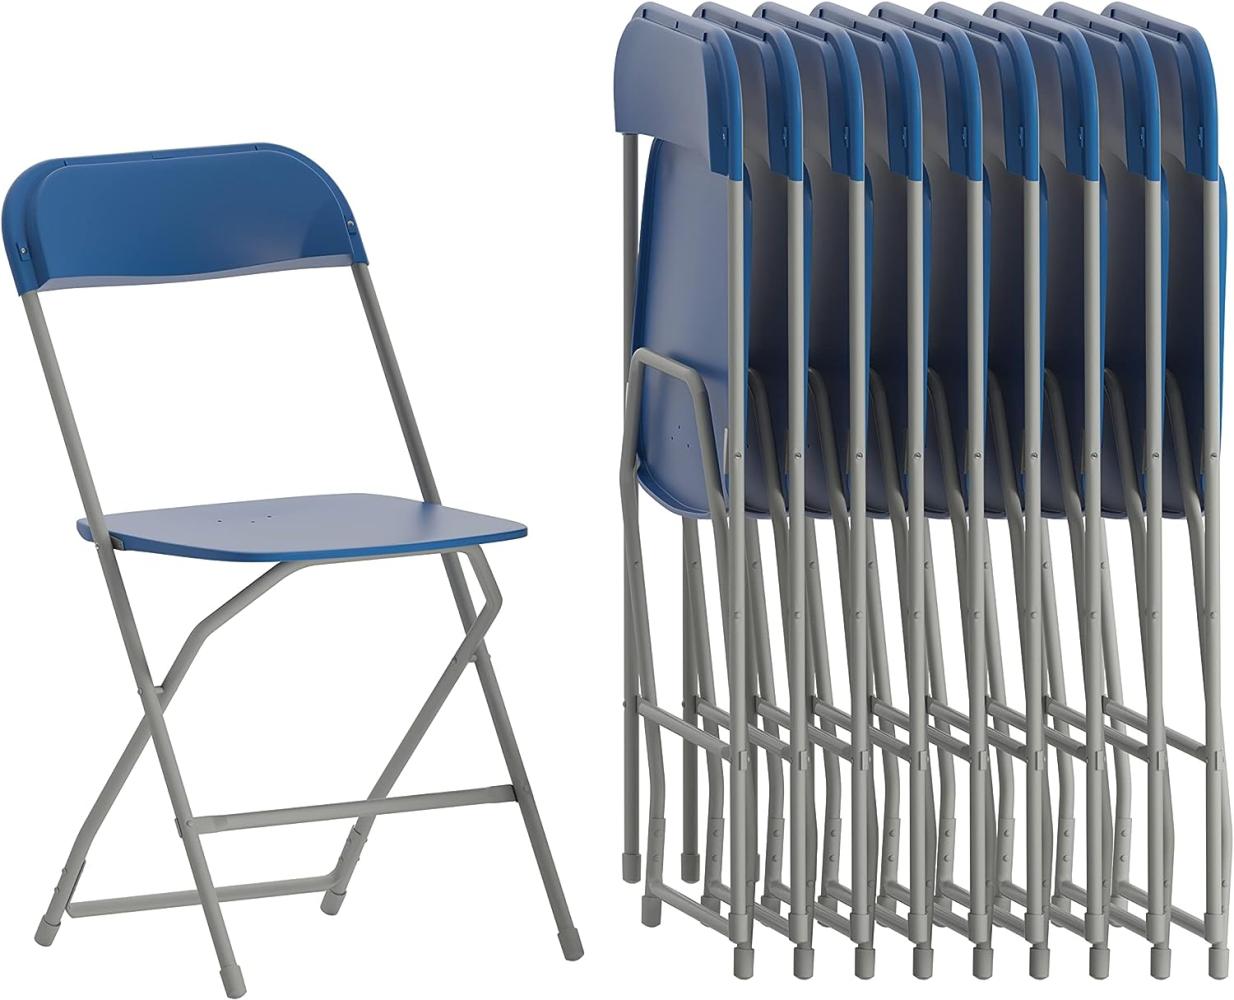 Flash Furniture Klappstuhl, Kunststoff, blau, Set of 10 Bild 1